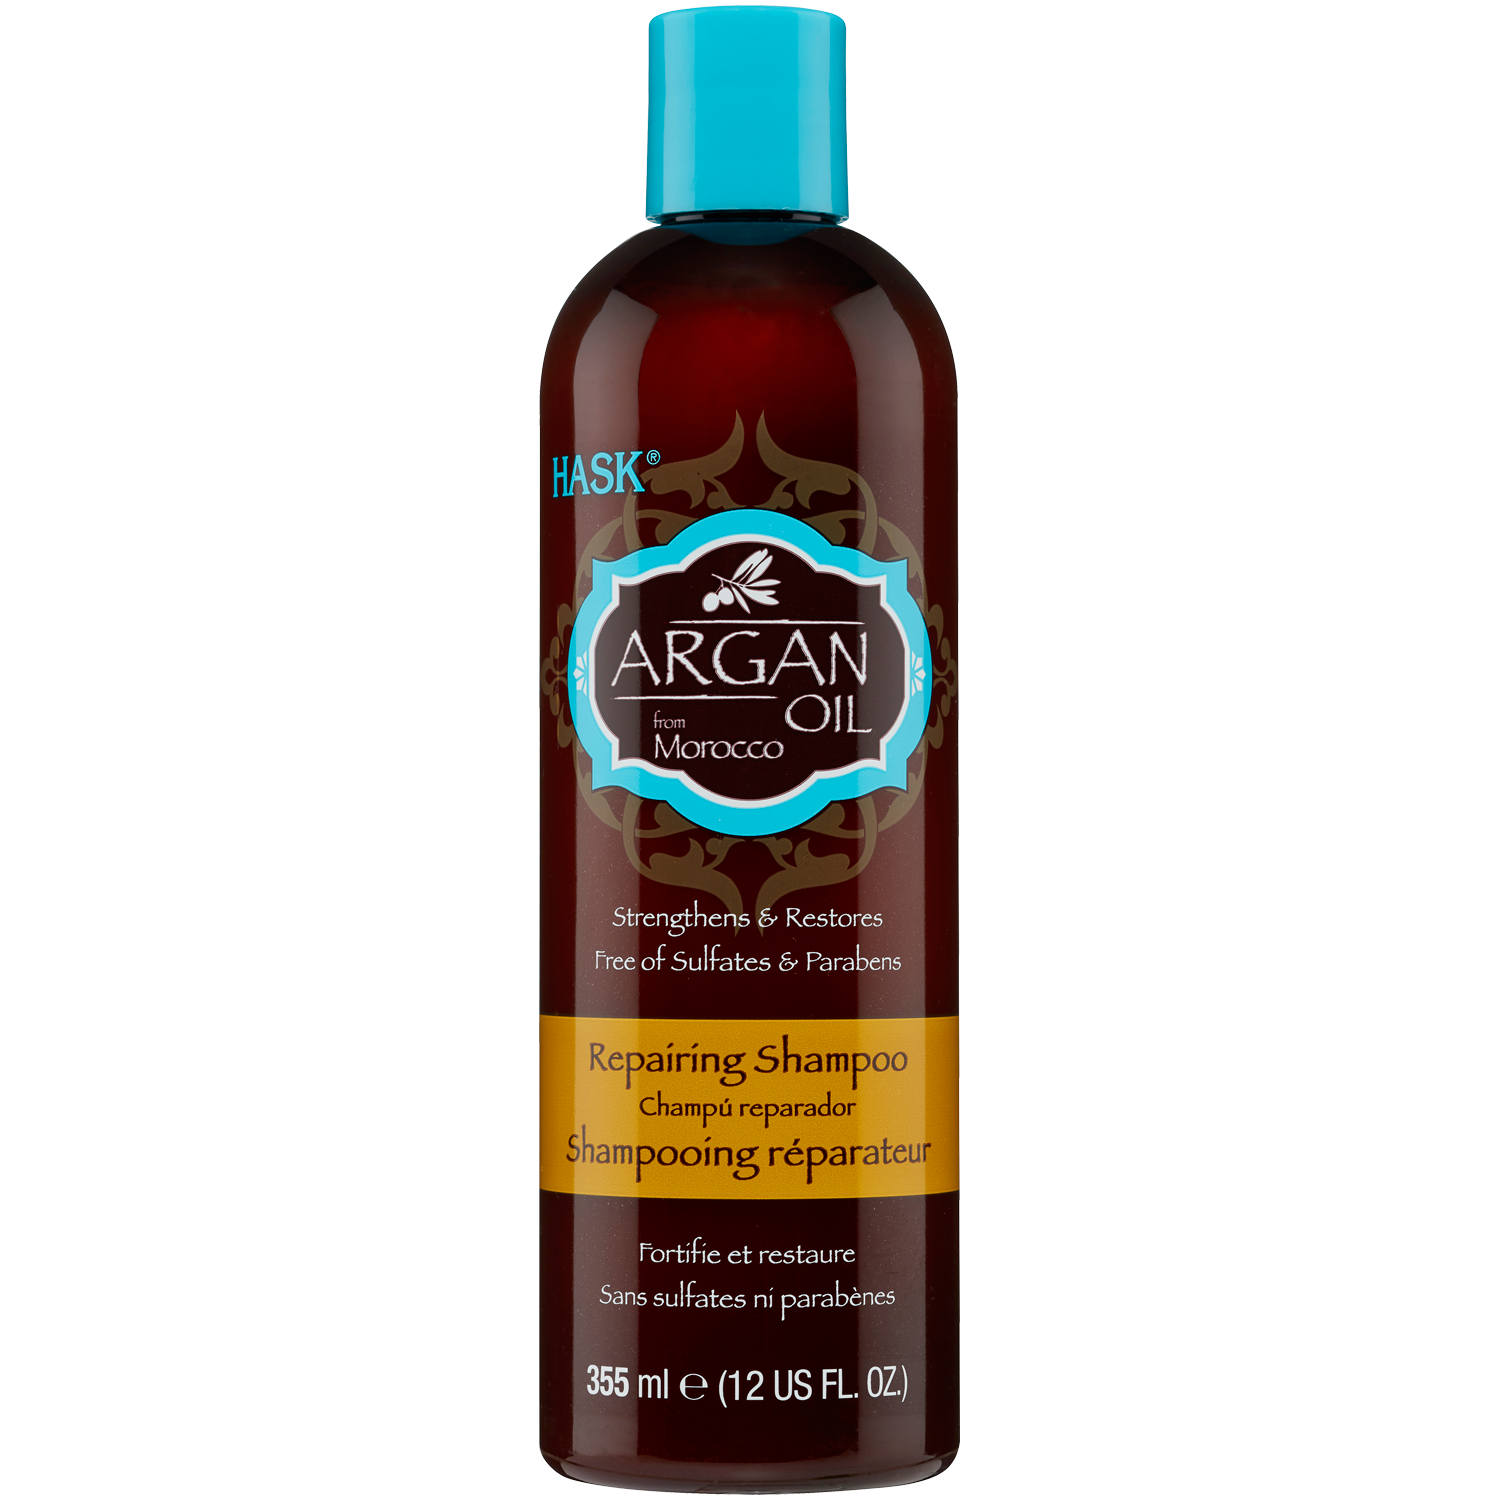 szampon z olejkiem arganowym hebe